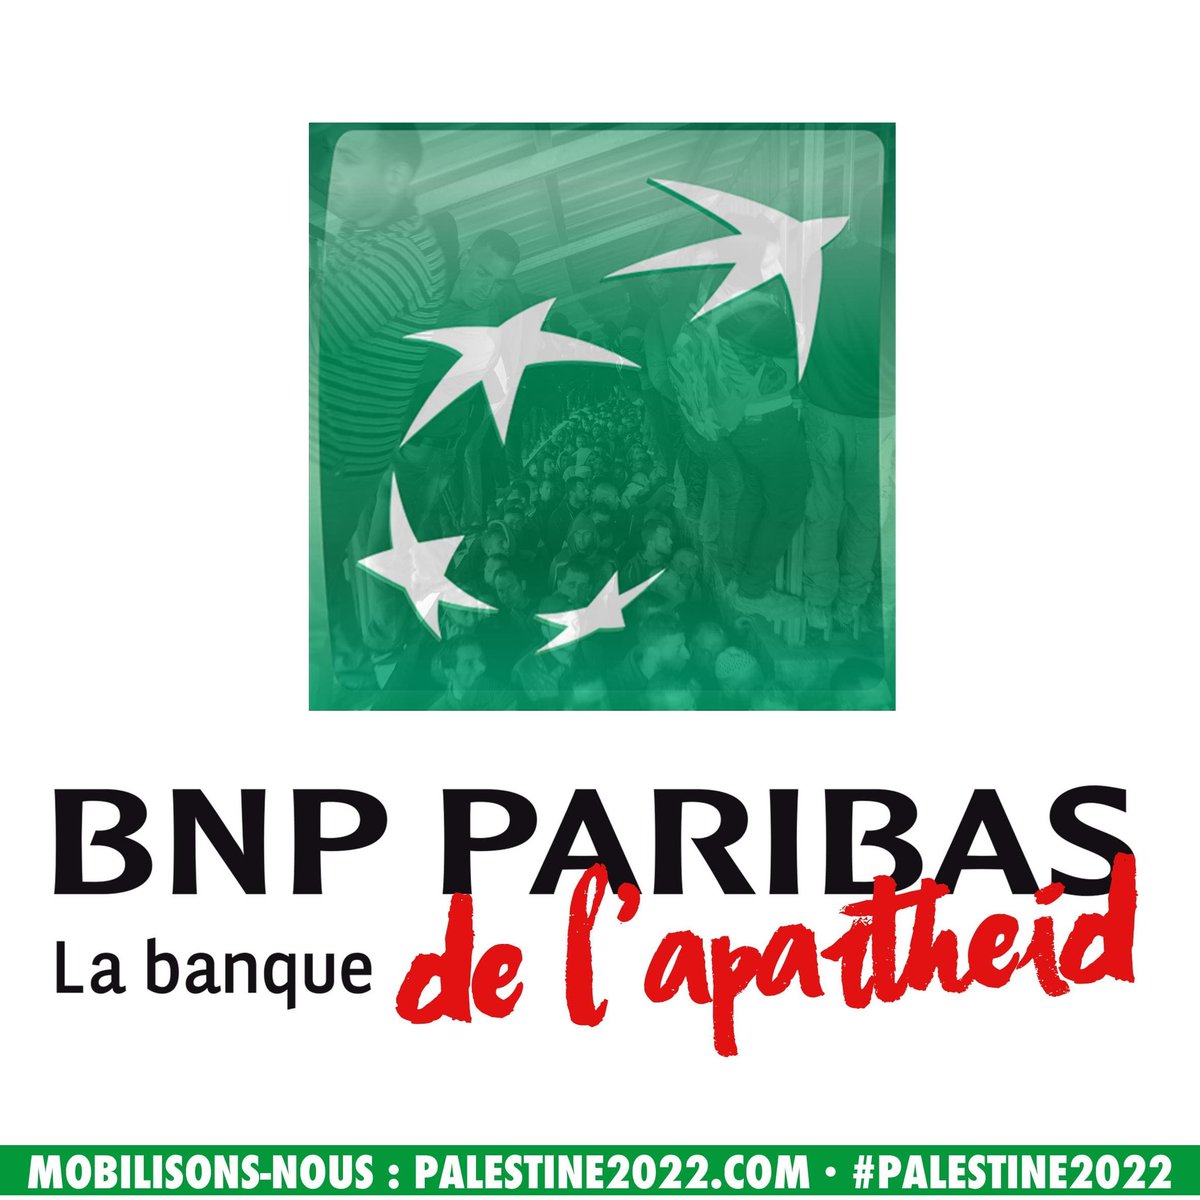 #DontBuyIntoOccupation
BNP Paribas : la banque de l'apartheid !